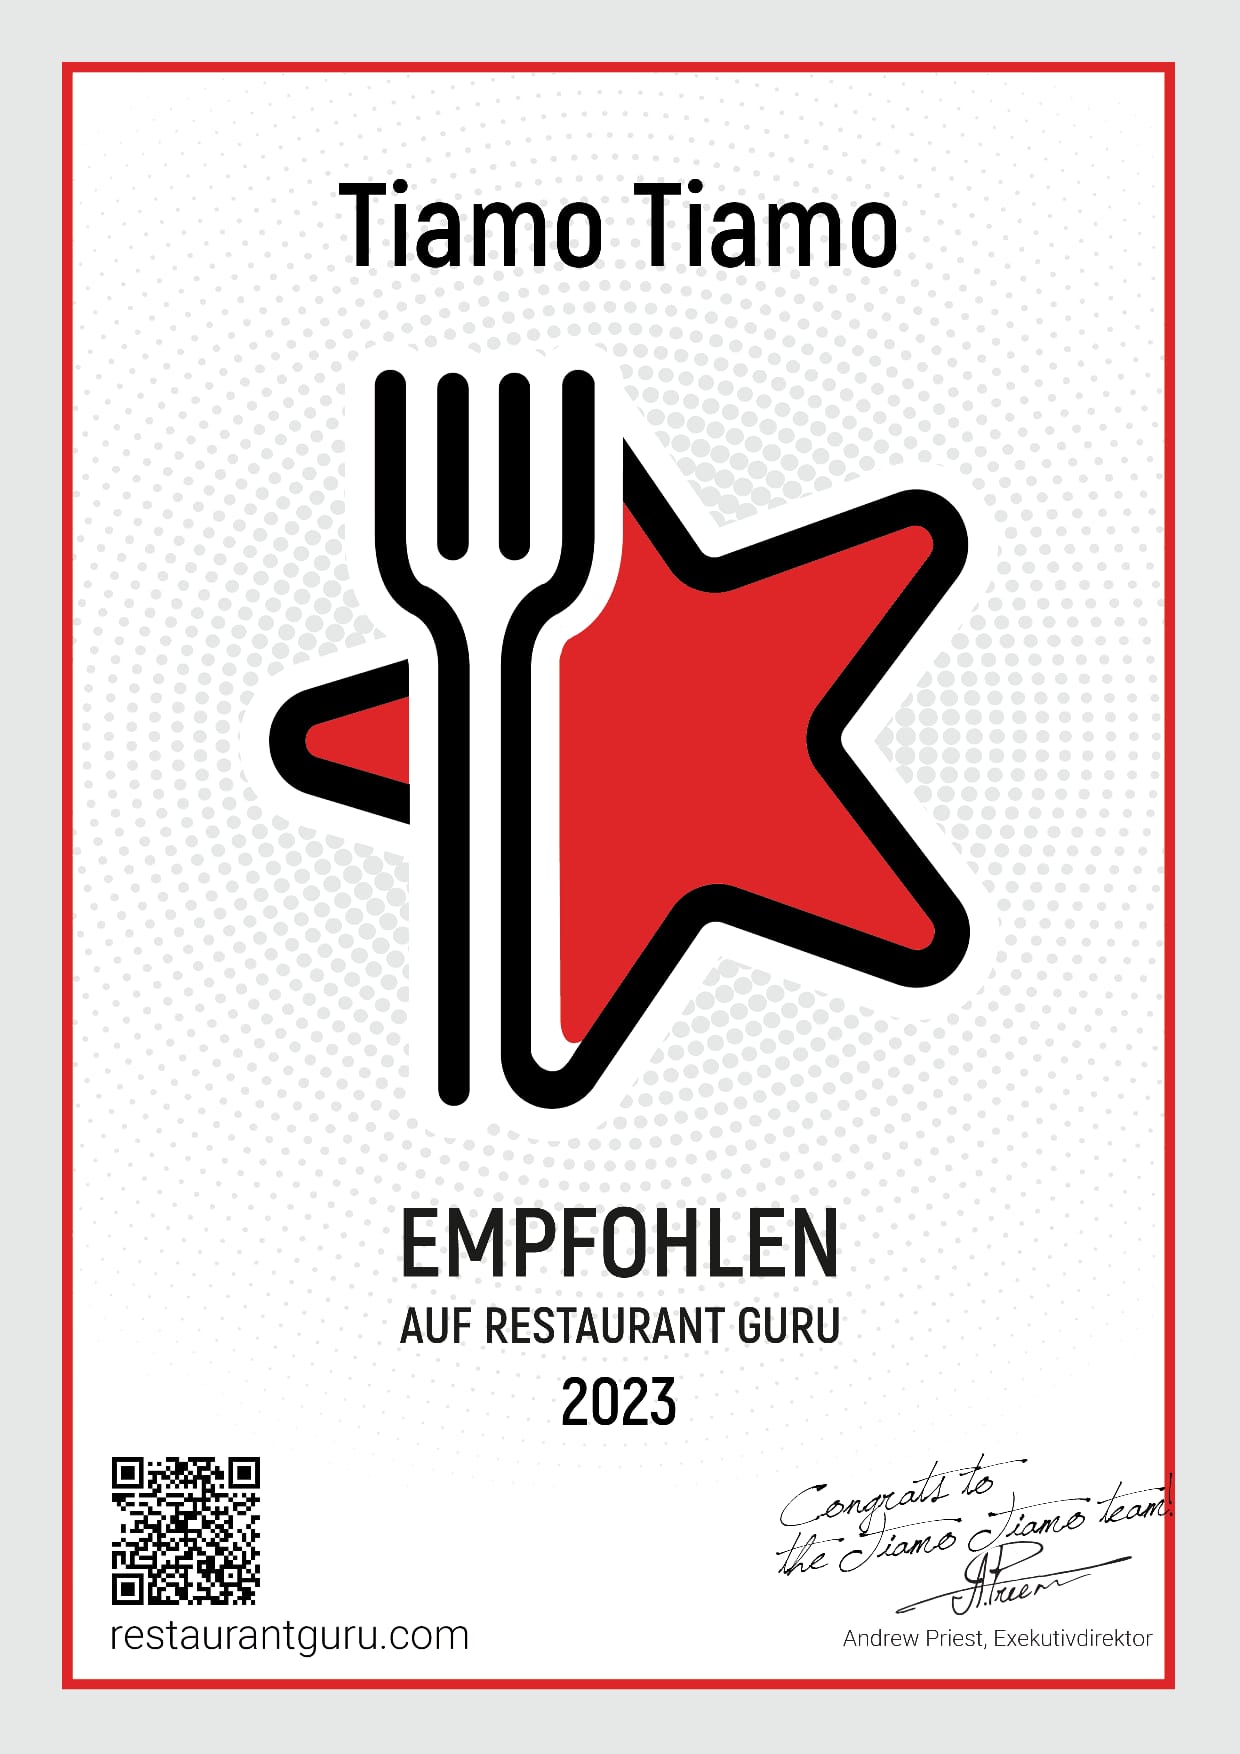 Restaurant Guru 2023